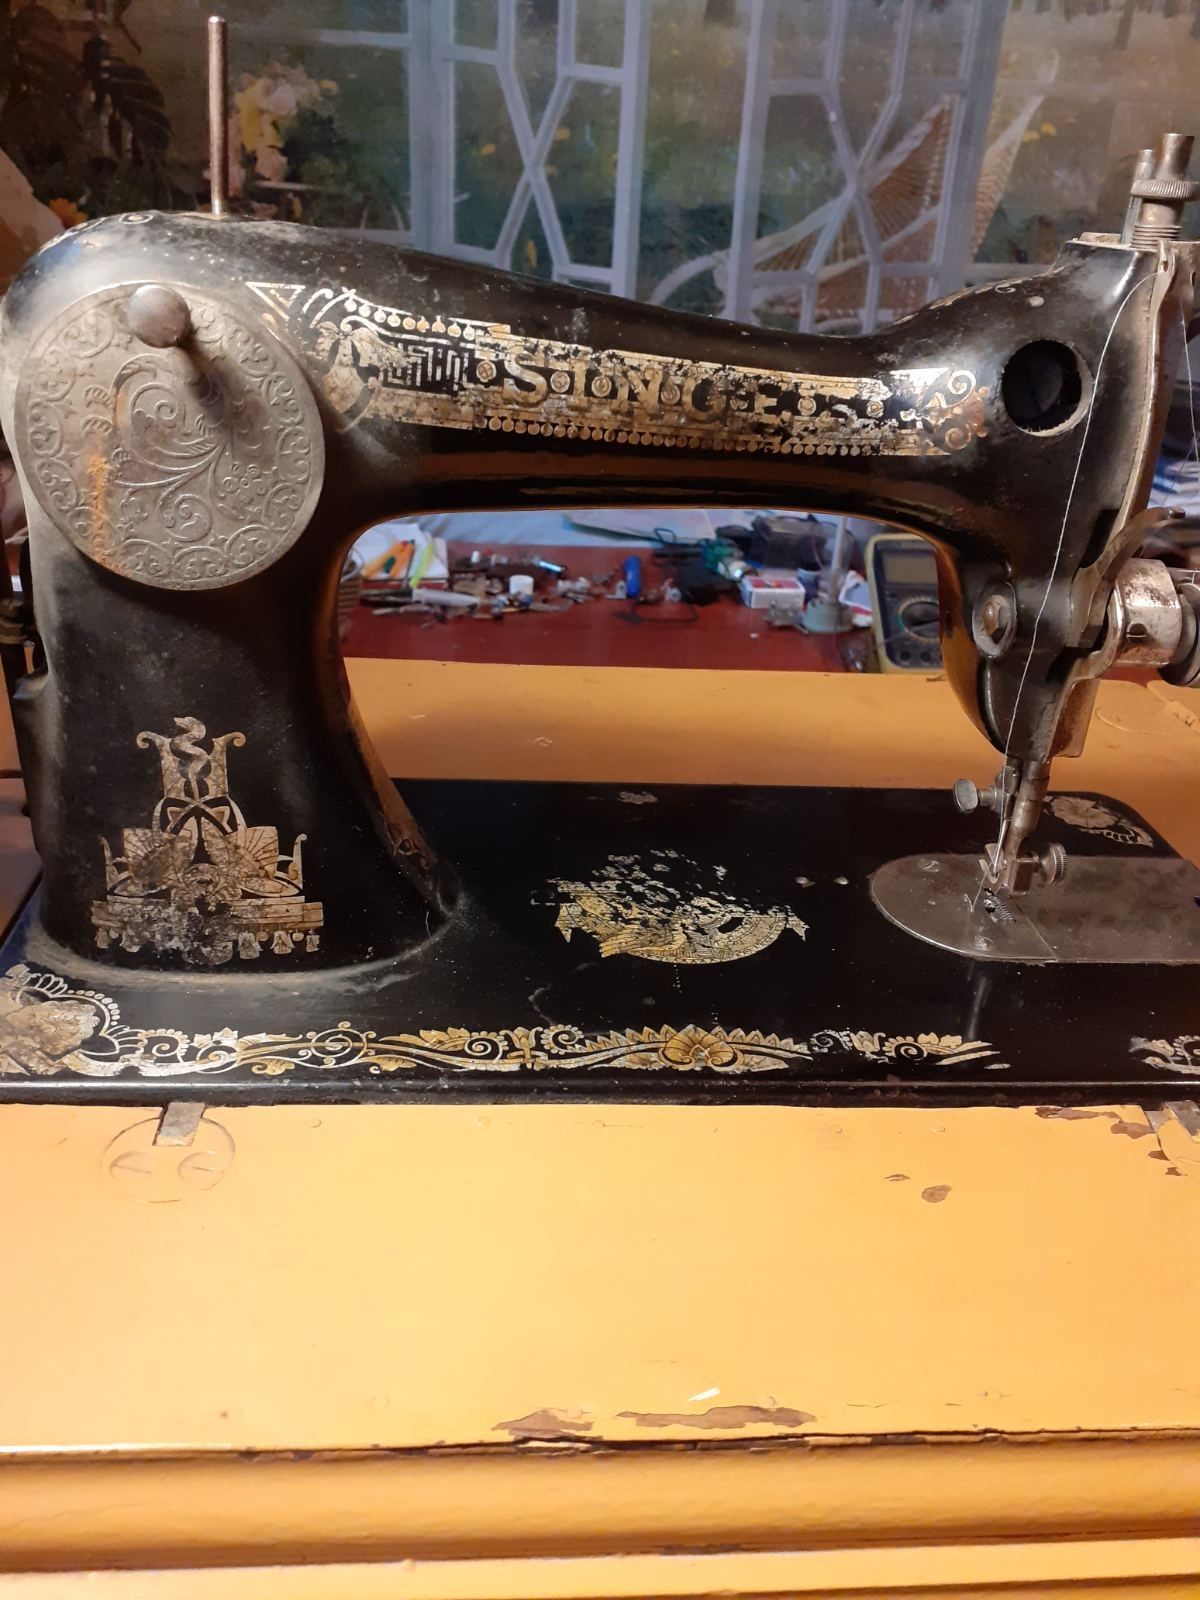 Швейная машинка S(Z)inger, 1910 года, серийный номер: F88545 Состояние